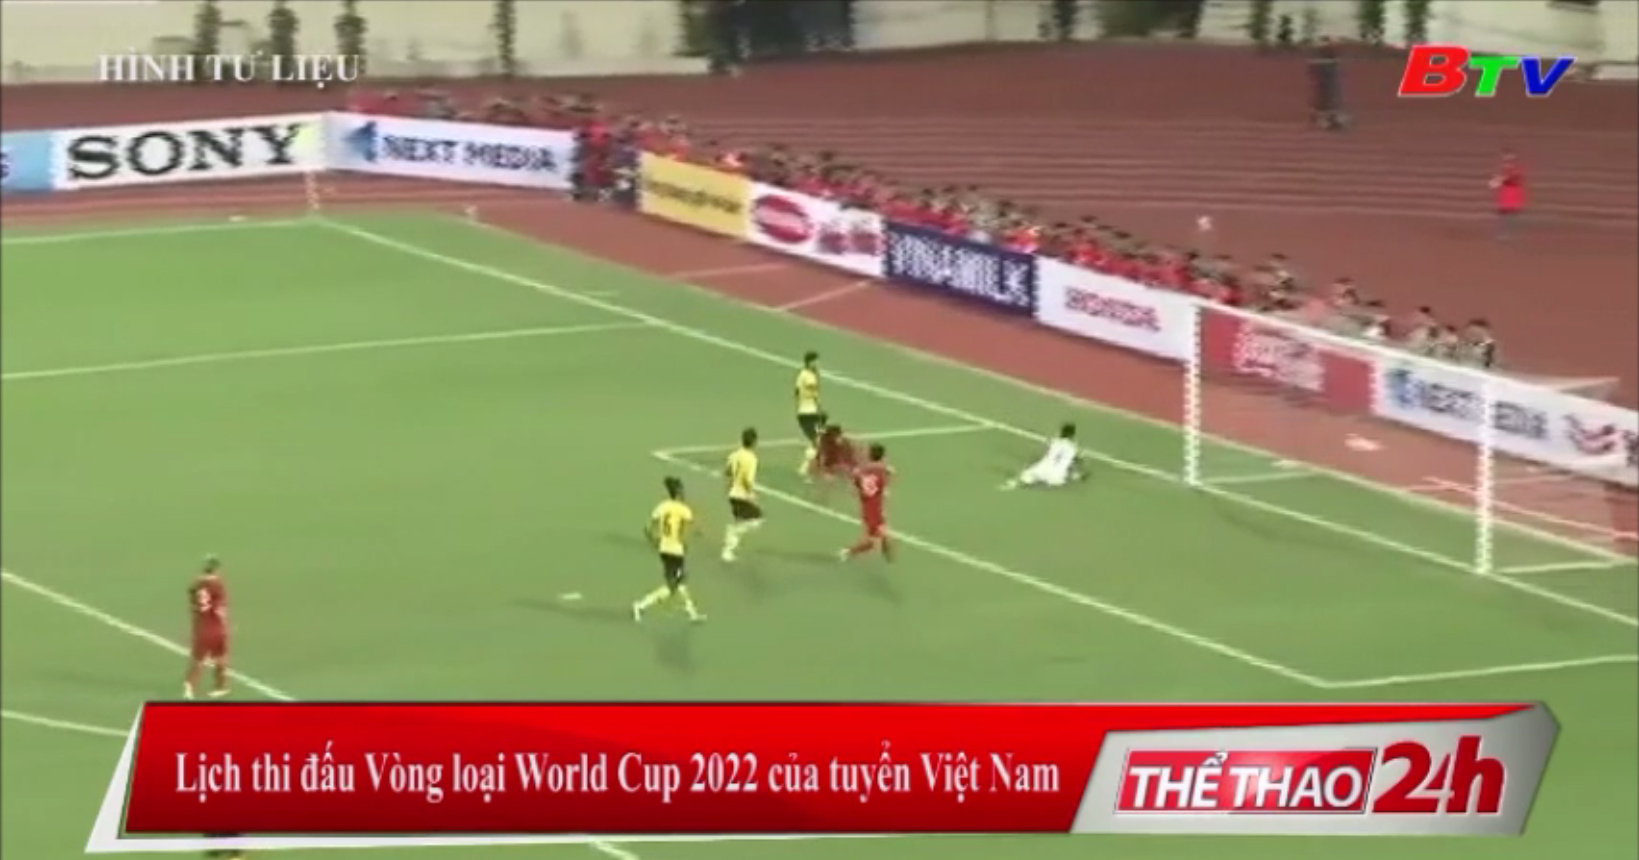 Lịch thi đấu Vòng loại World Cup 2022 của tuyển Việt Nam